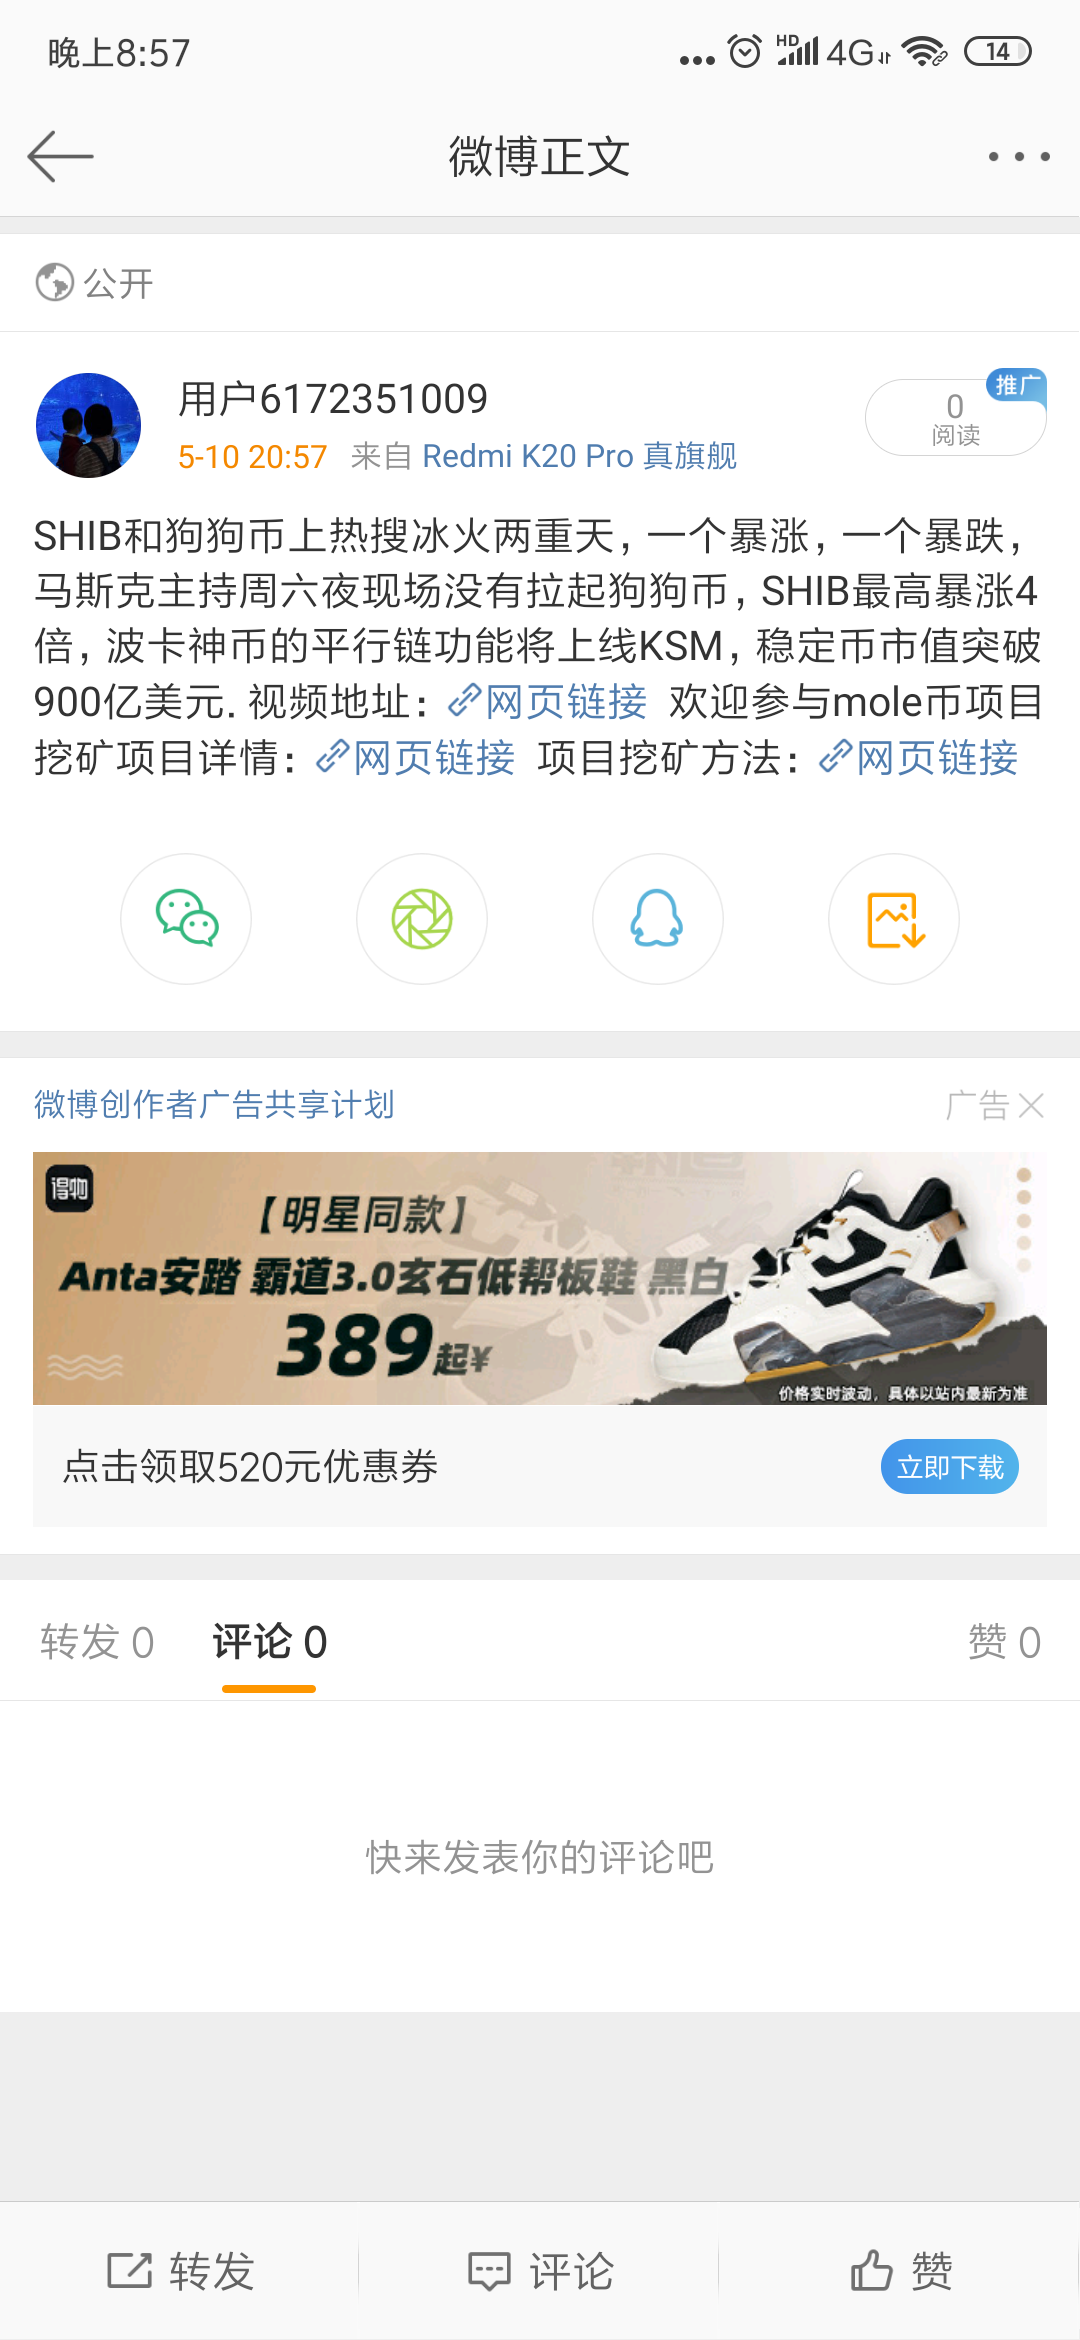 Screenshot_2021-05-10-20-57-21-809_com.sina.weibo.png